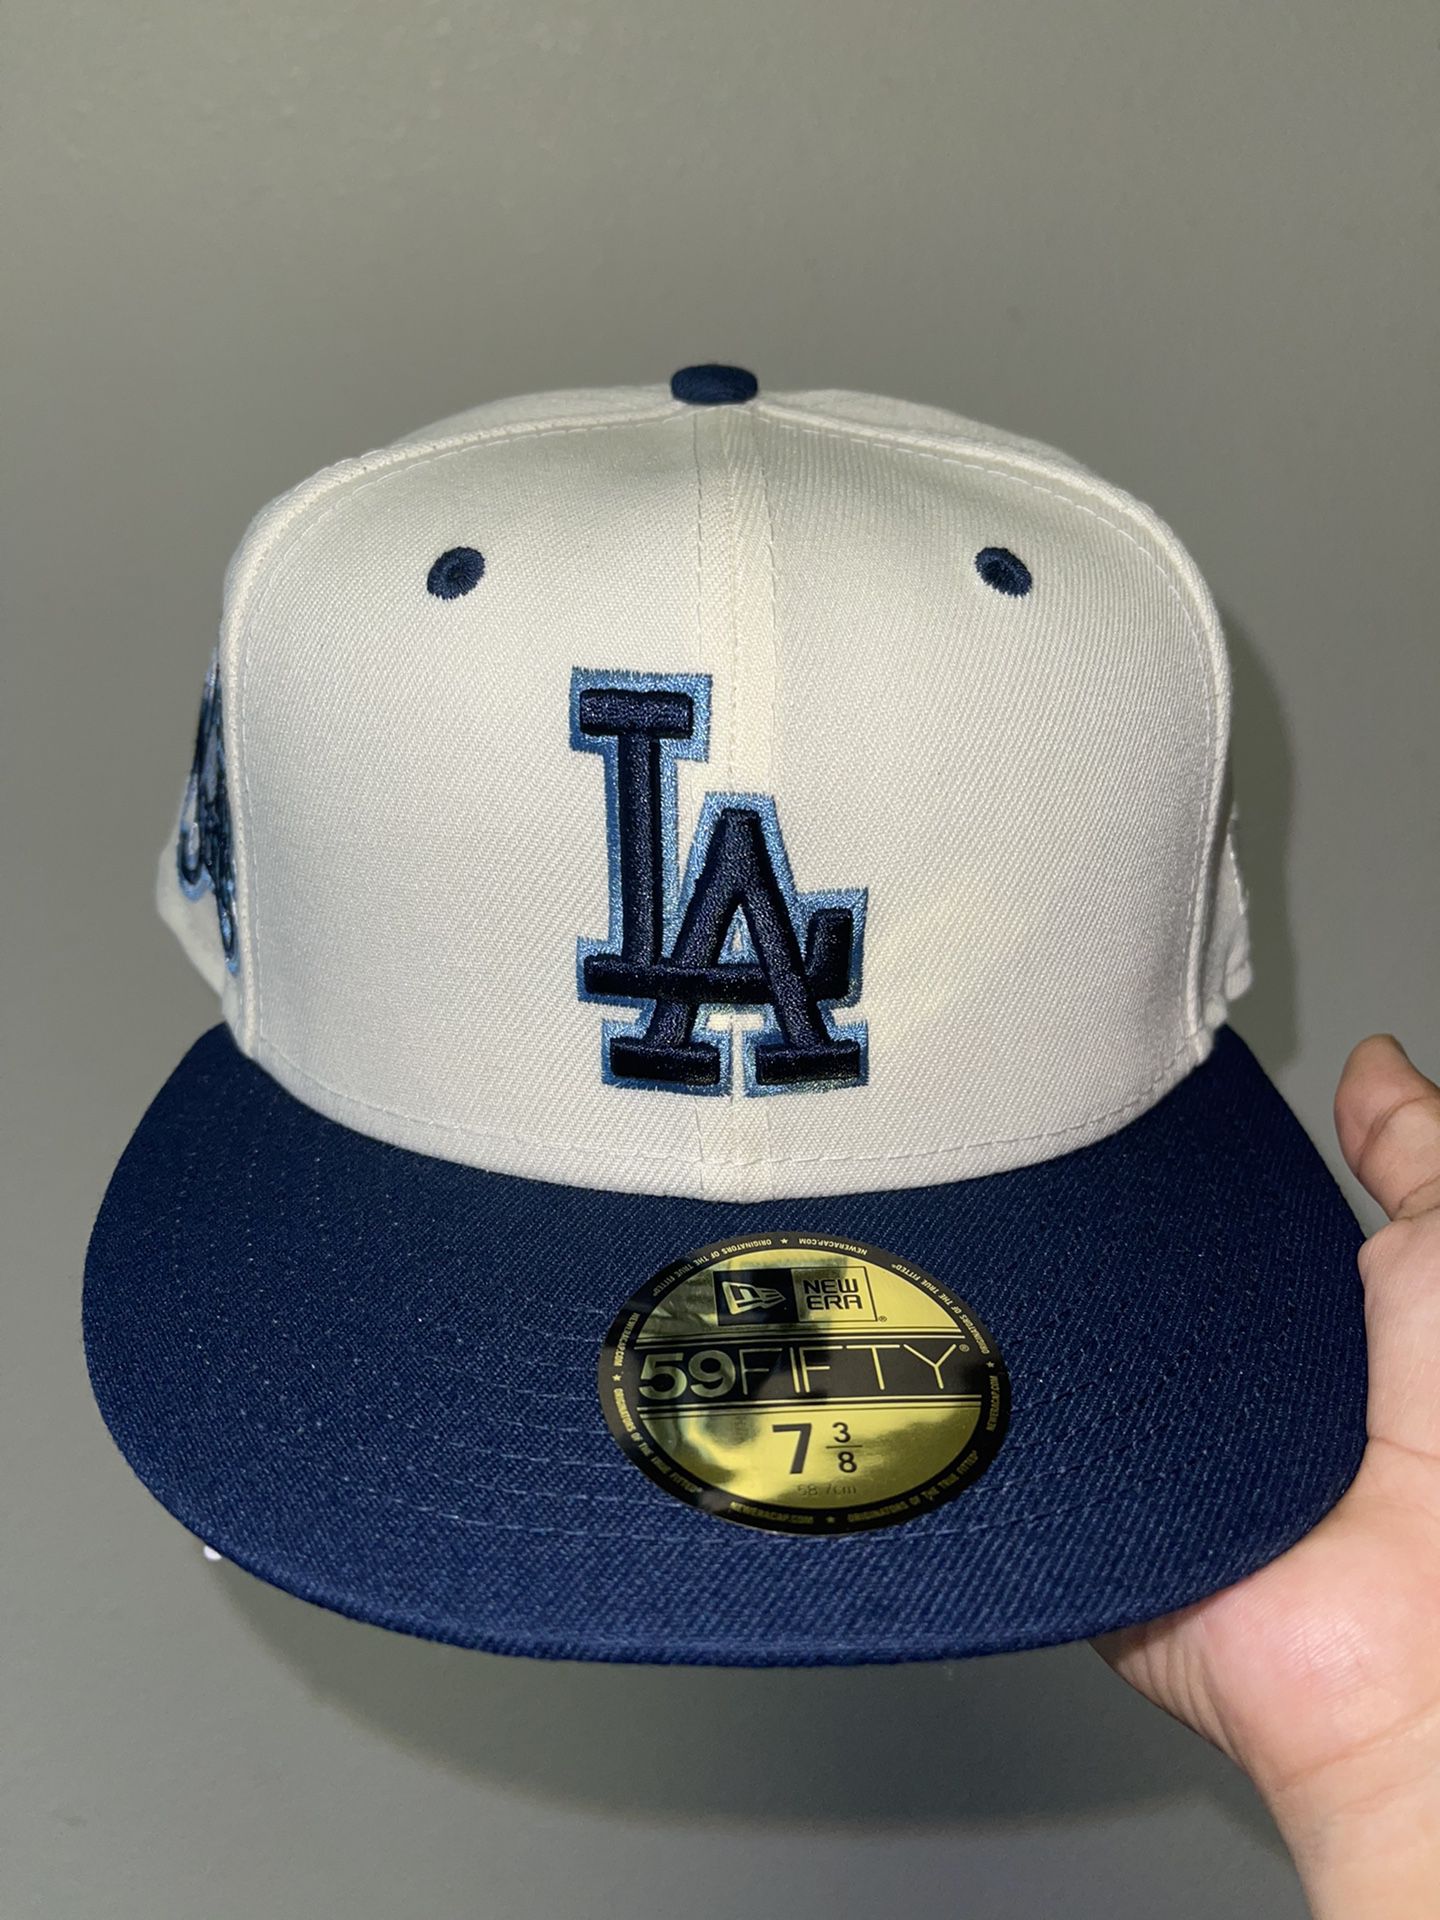 skøjte petulance Hvile LA Dodgers Navy Blue 2 Tone Fitted Hat for Sale in Highland Park, CA -  OfferUp